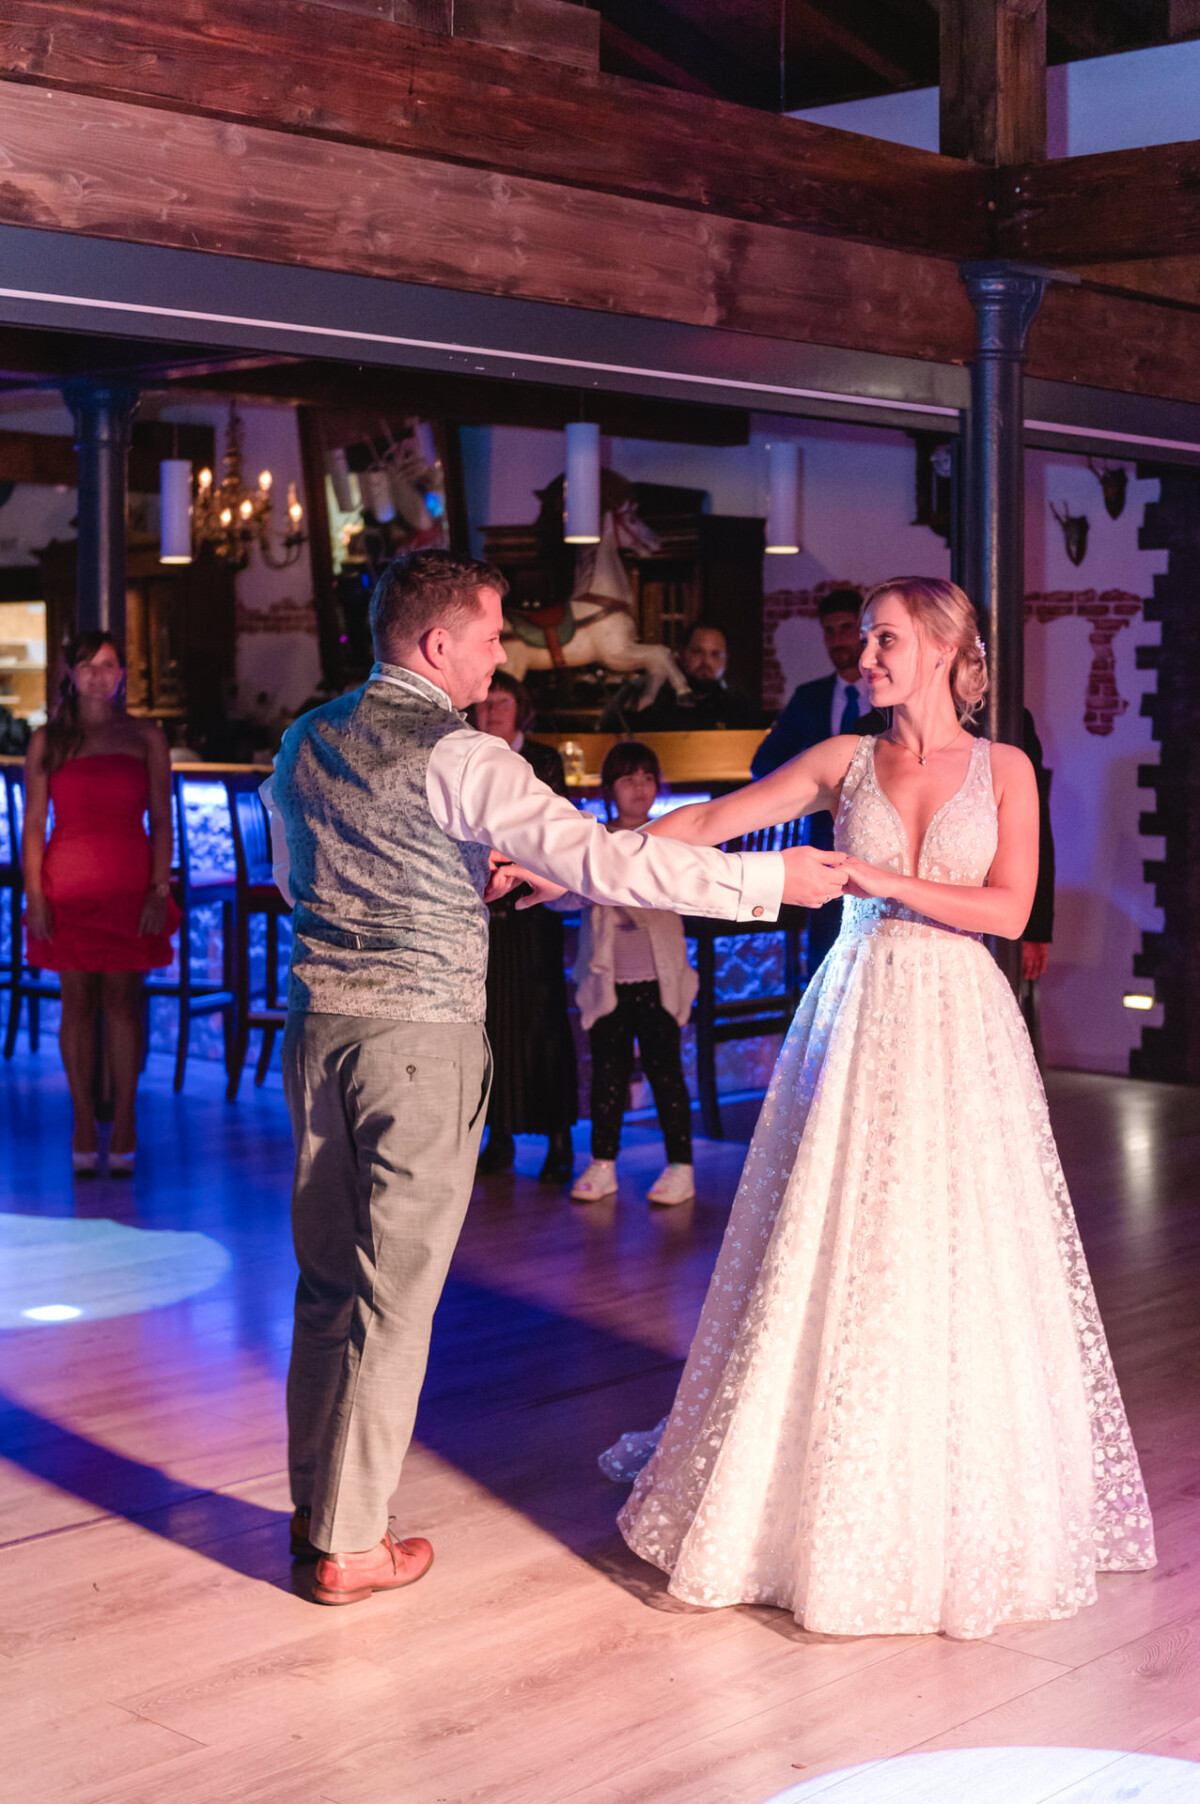 Ein Mann und eine Frau tanzen auf einer Tanzfläche im Land-Steakhaus Bürger in Marxheim